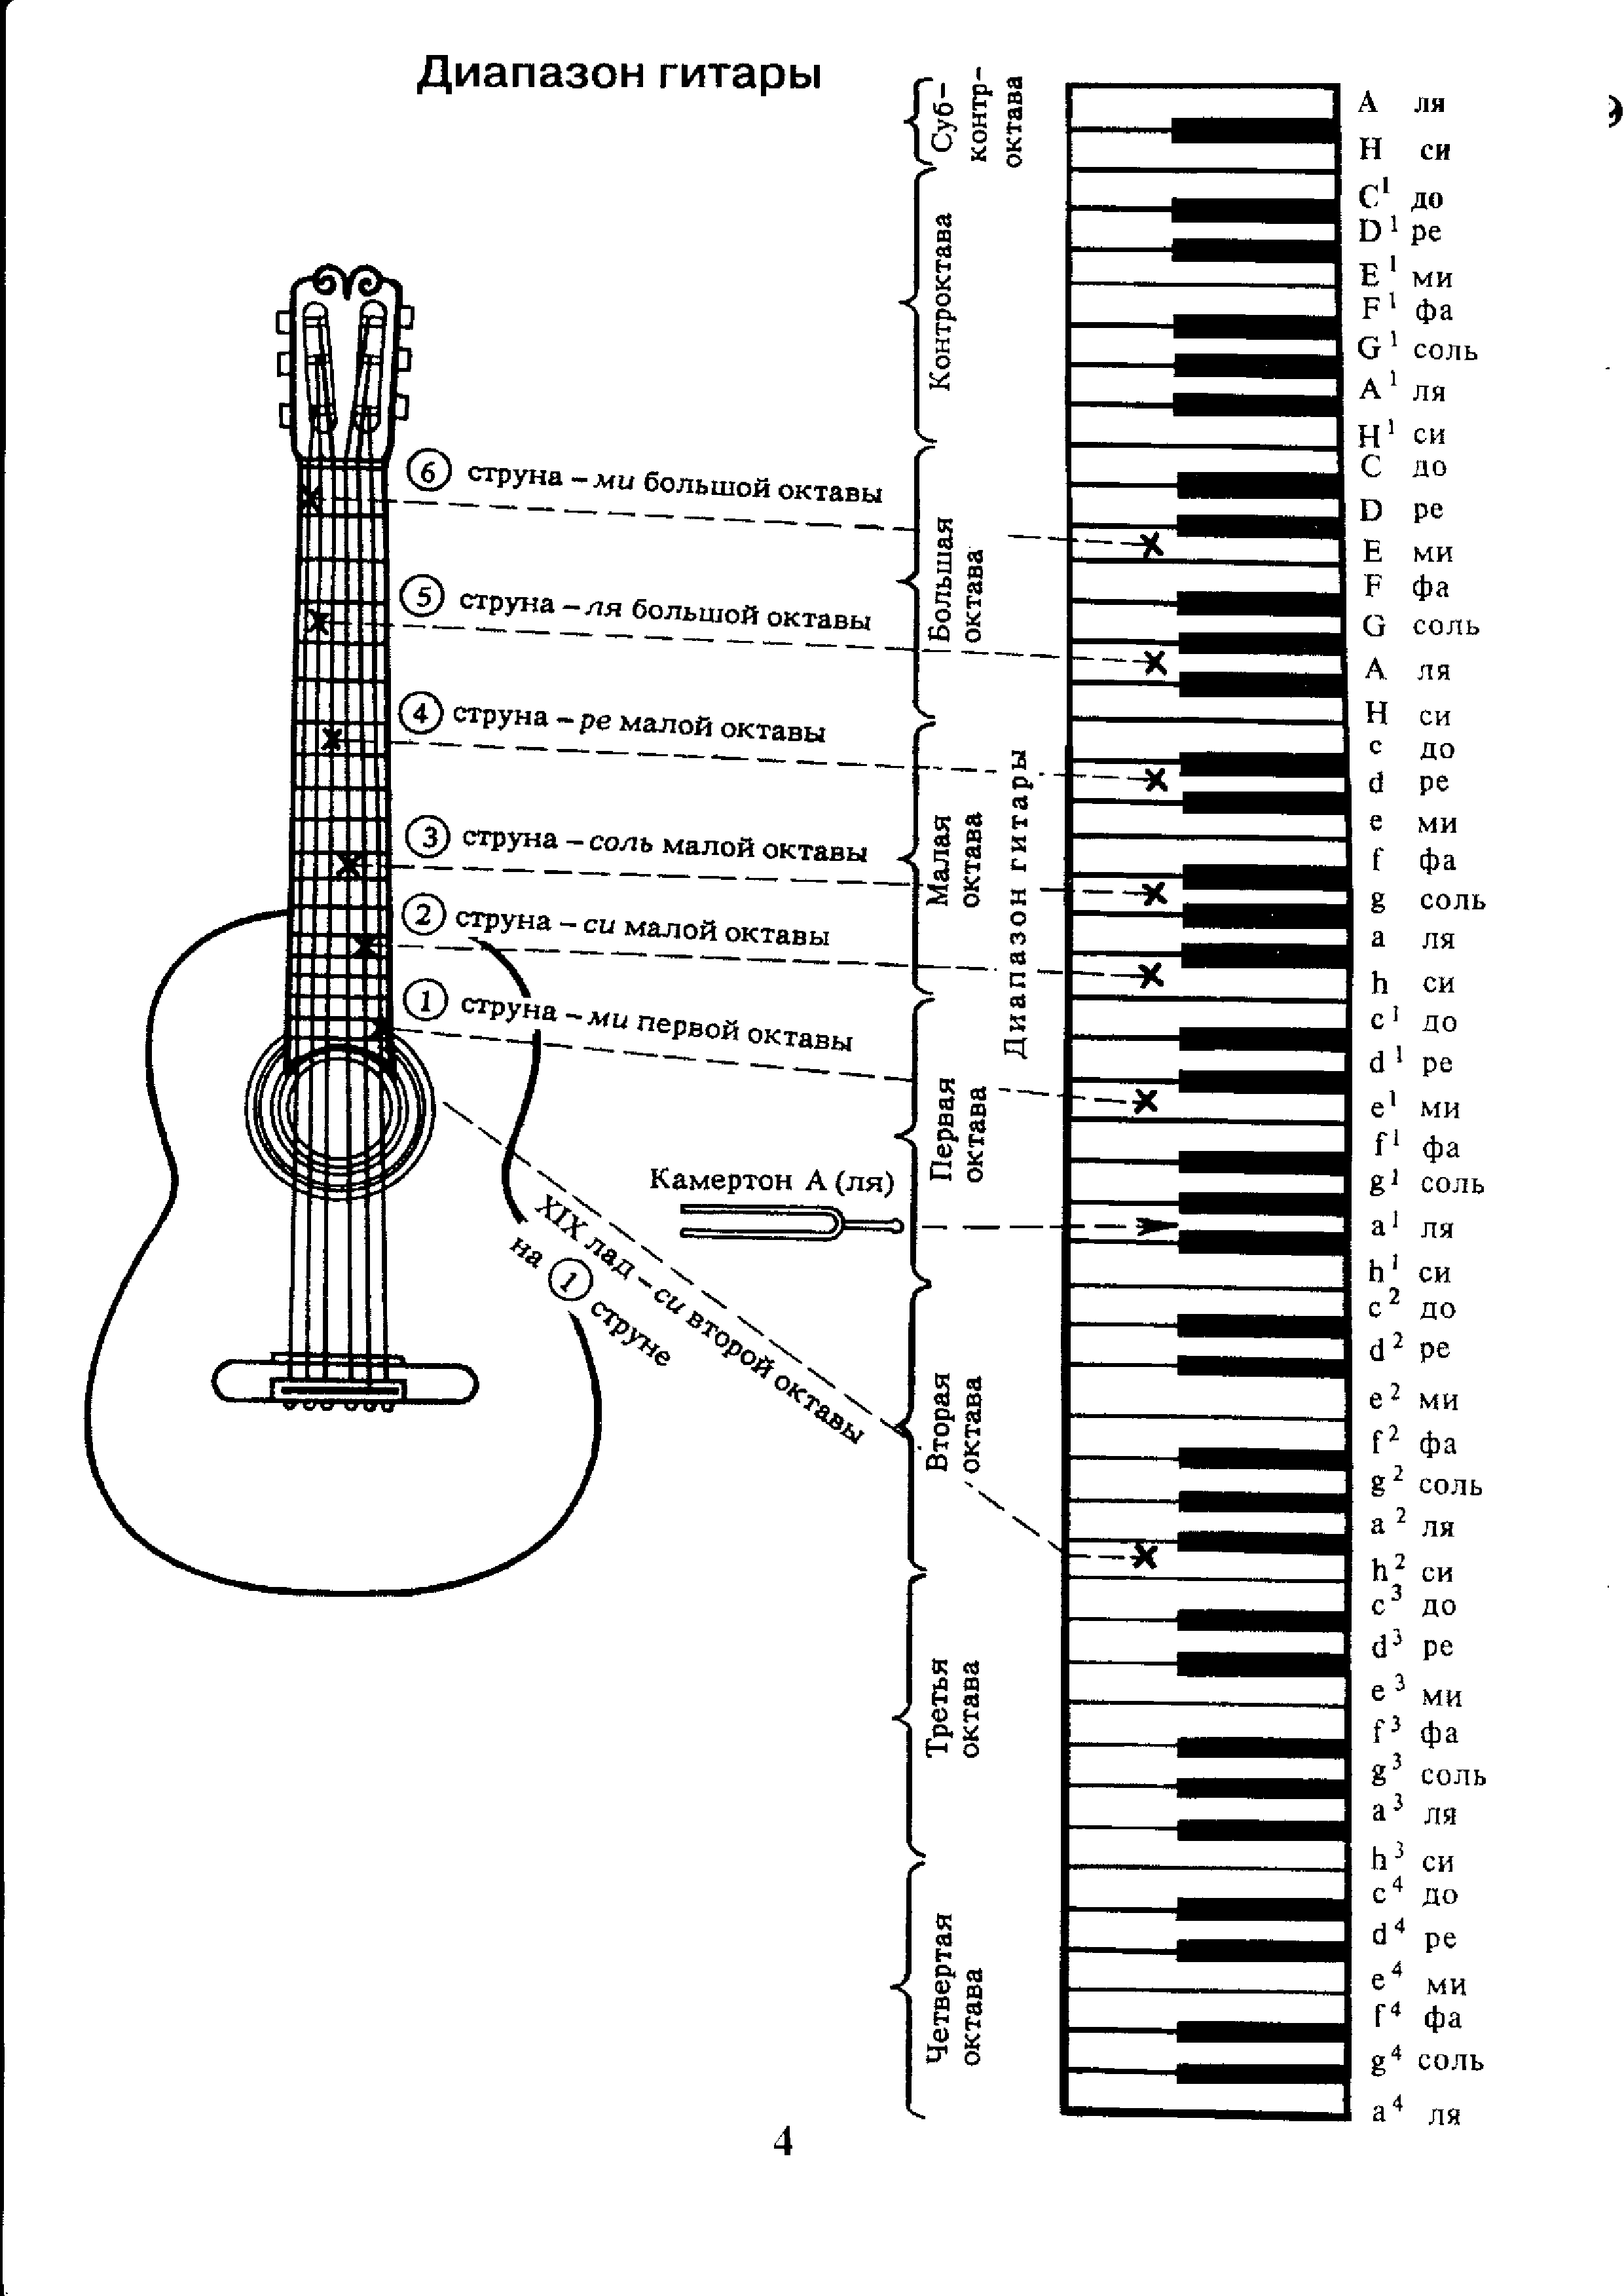 Ноты гитары с нуля. Аппликатура аккордов для гитары 6 струн для начинающих. Ноты на гитарном грифе 6 струнной. Лады на 6 струнной гитаре для начинающих. Схема гитары классической 6 струнной.